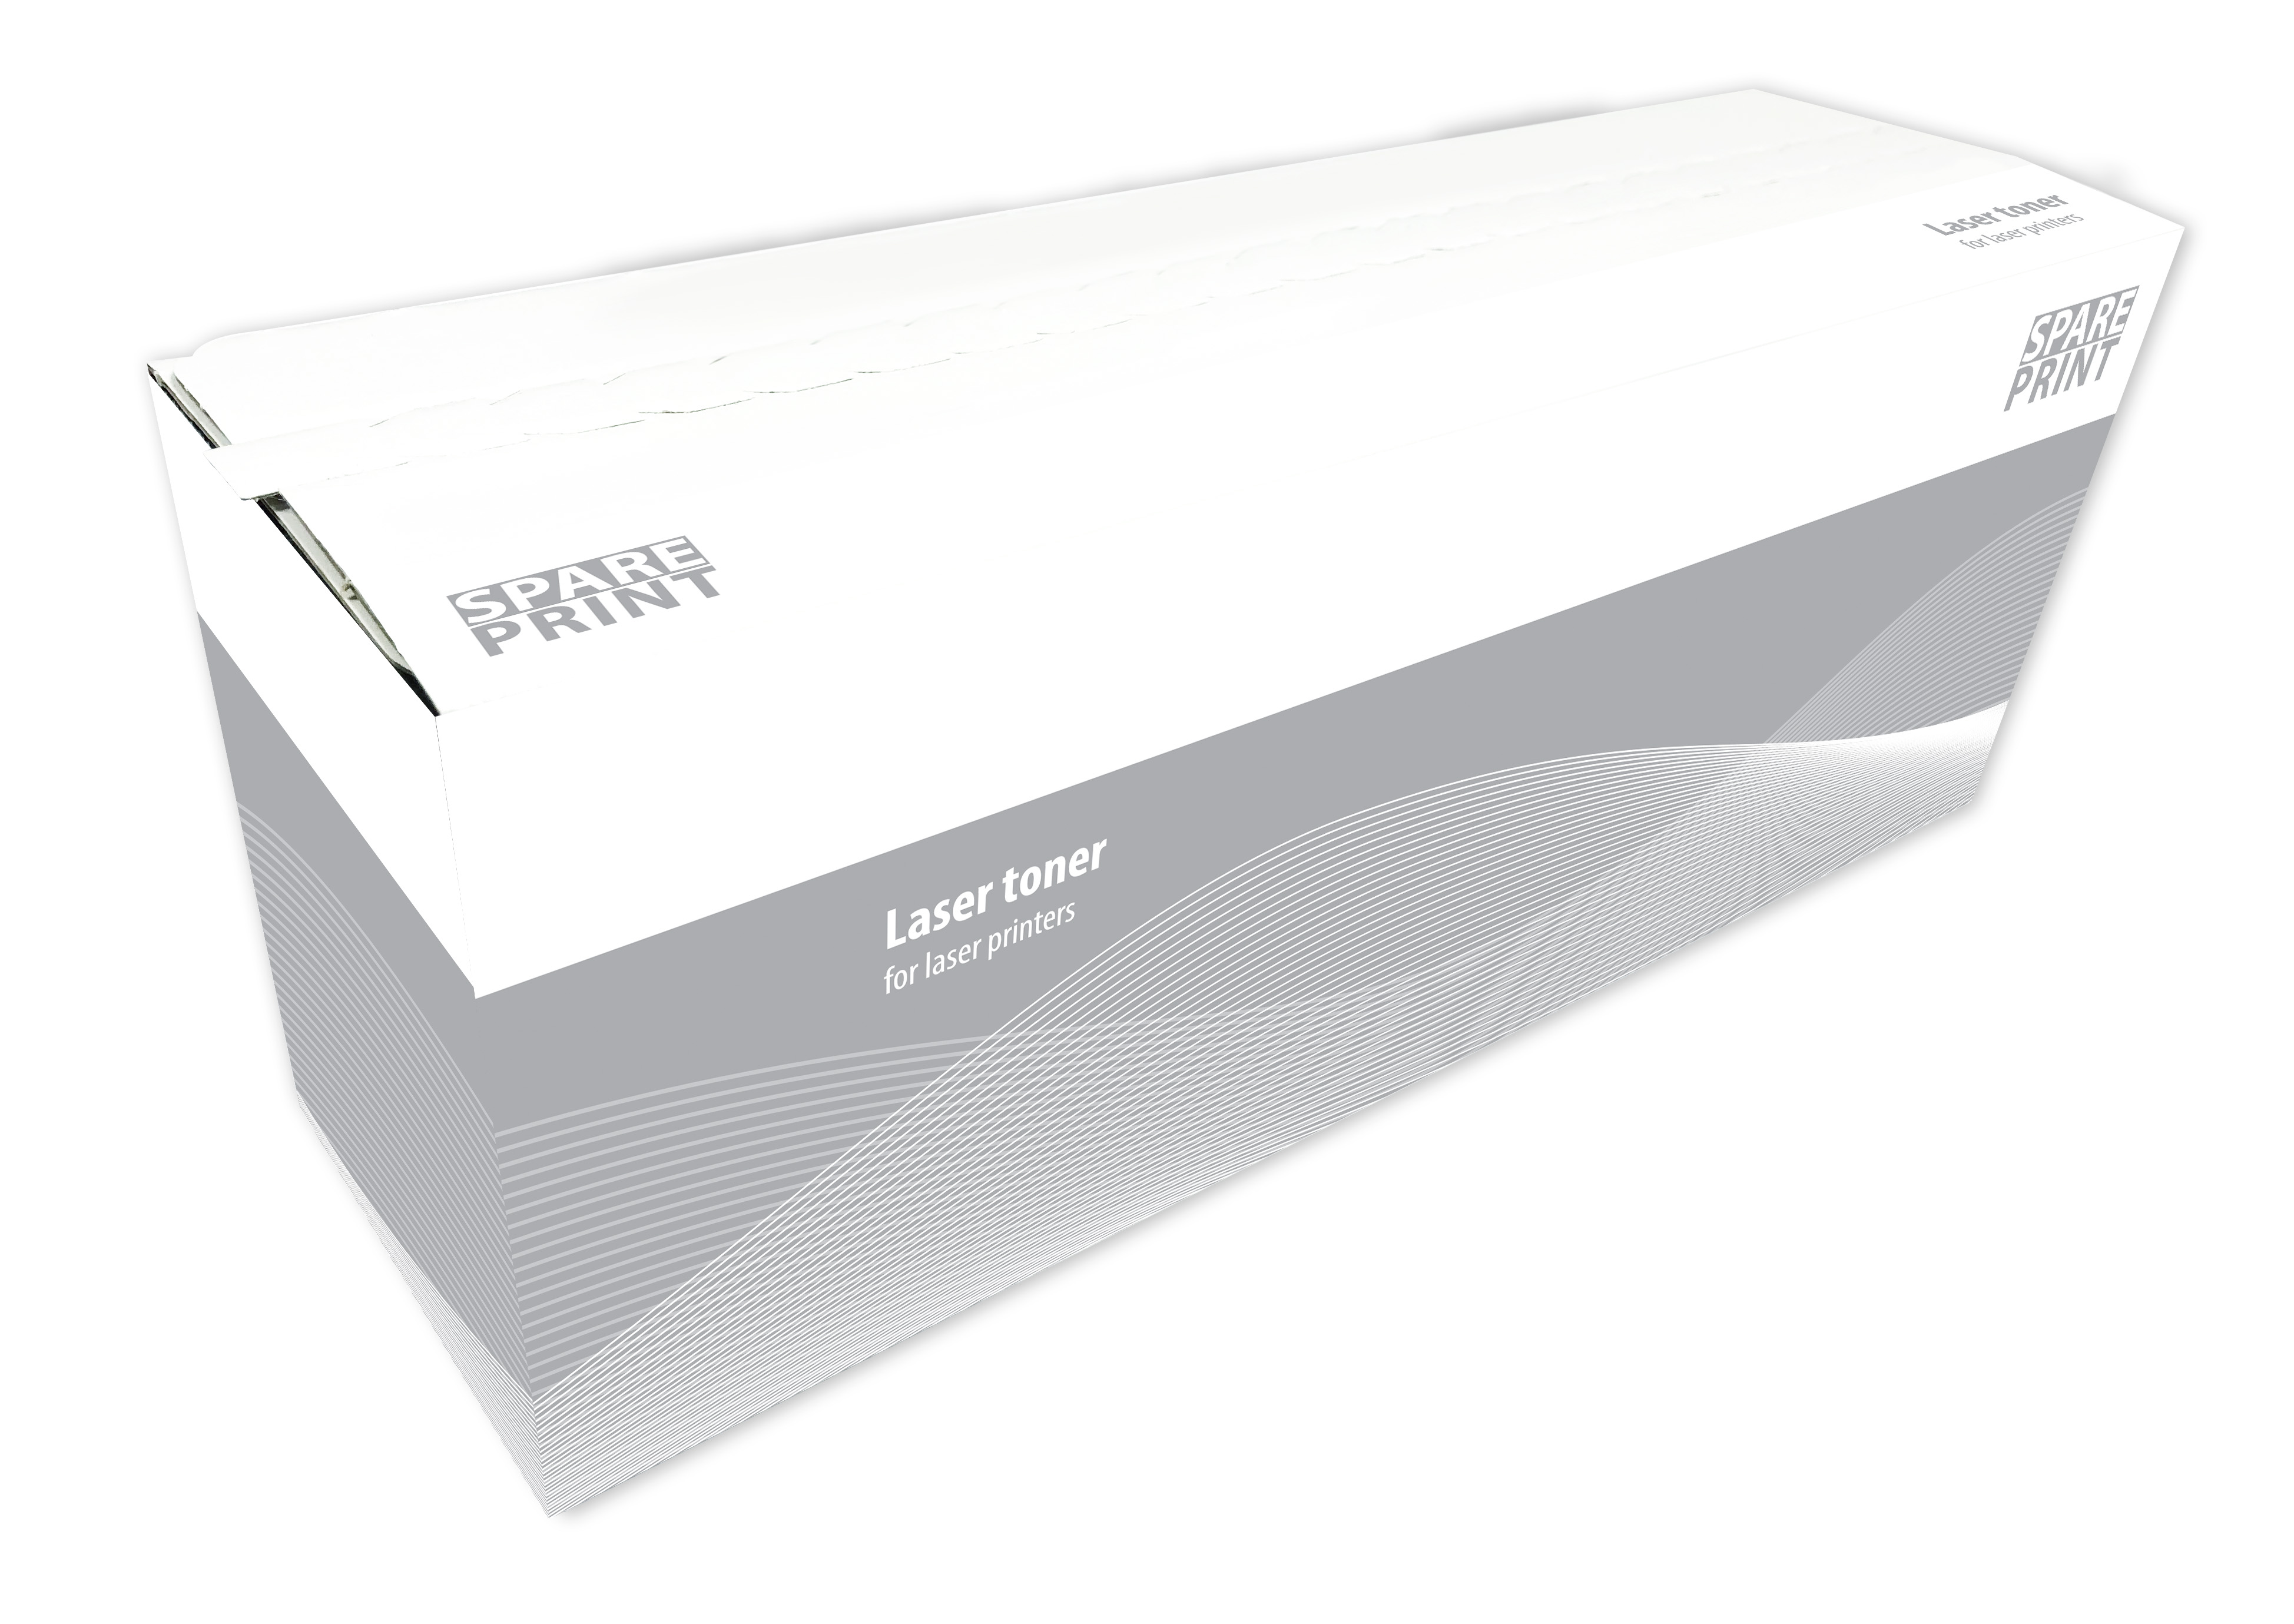 SPARE PRINT HP CE285A - kompatibilní SPARE PRINT kompatibilní toner CE285A č. 85A / CRG-725 Black pro tiskárny HP